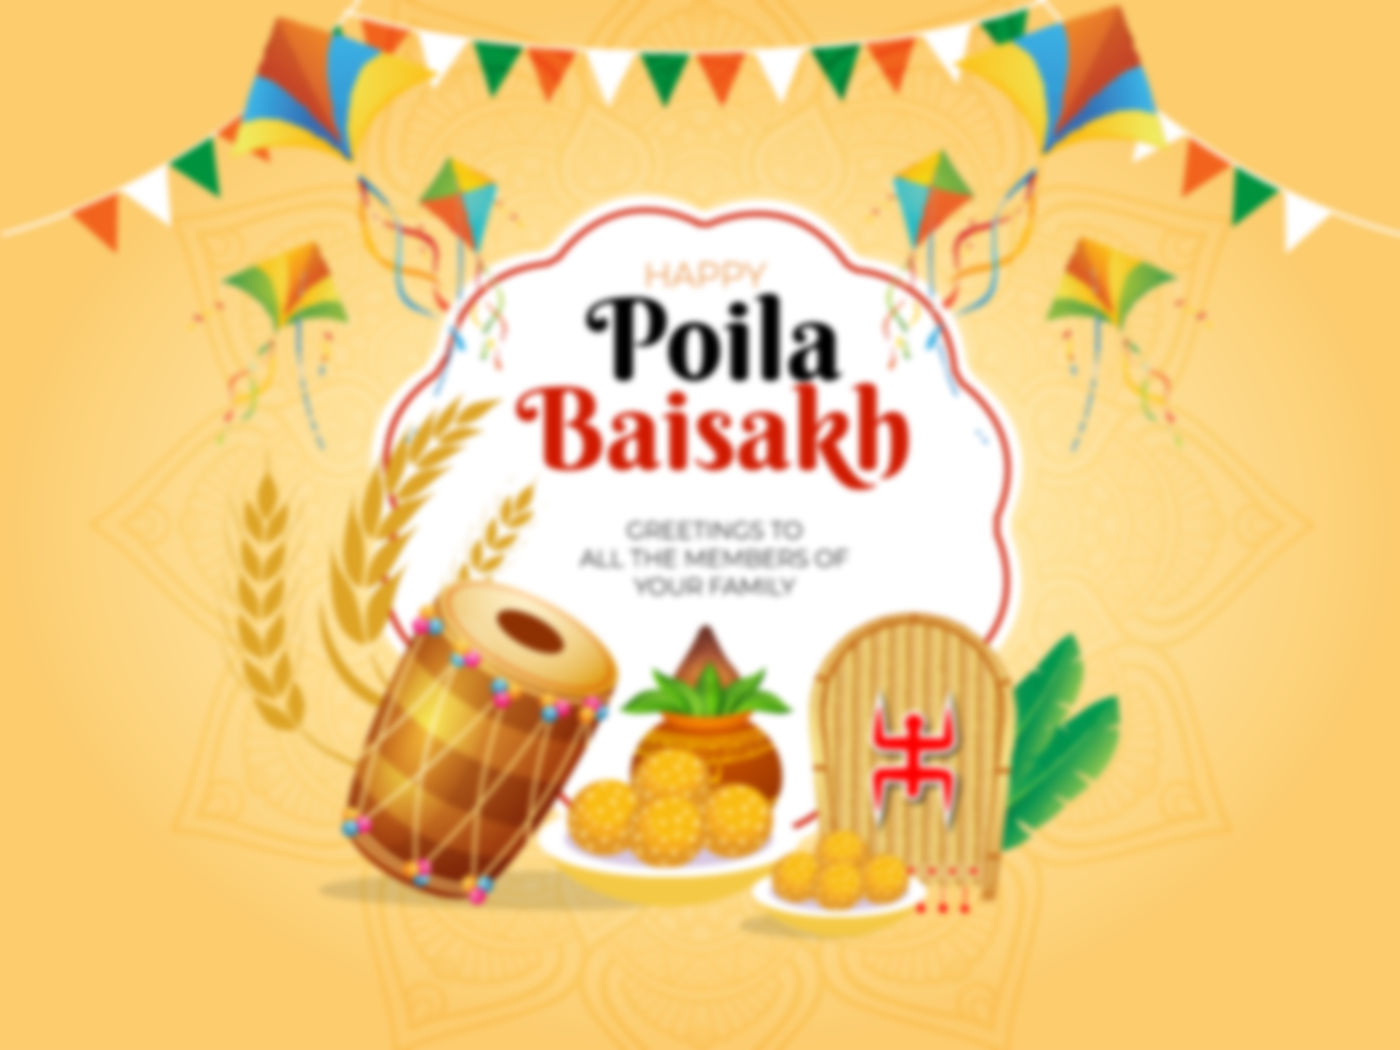 Bengali New Year (Poila Baisakh)